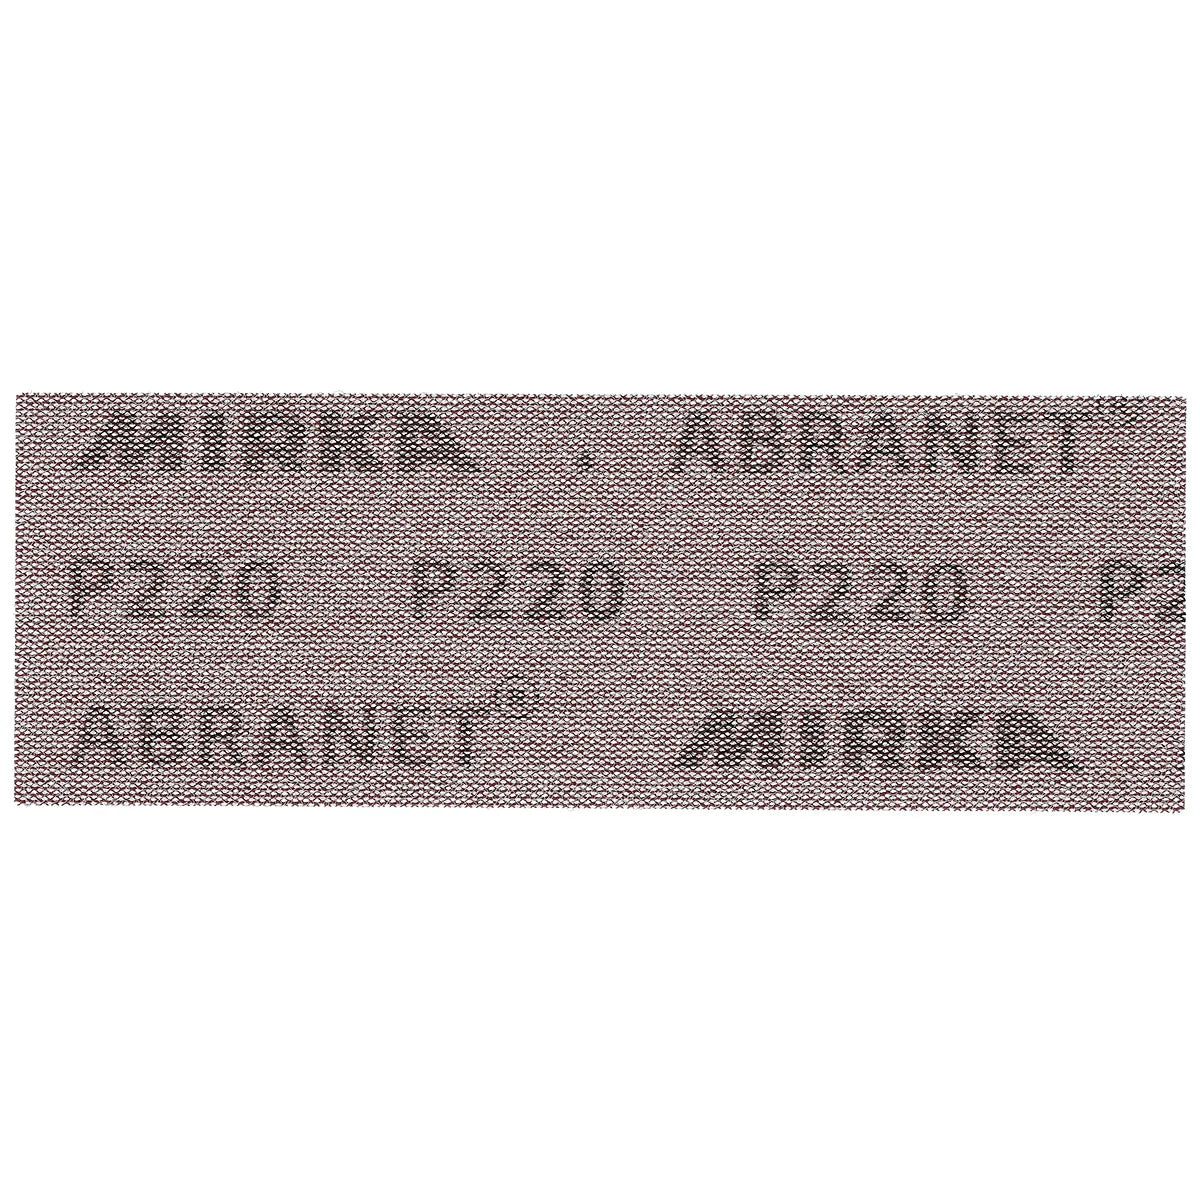 Mirka Handy Kit Abranet 3" x 9" Mesh Grip Rectangle Sheets